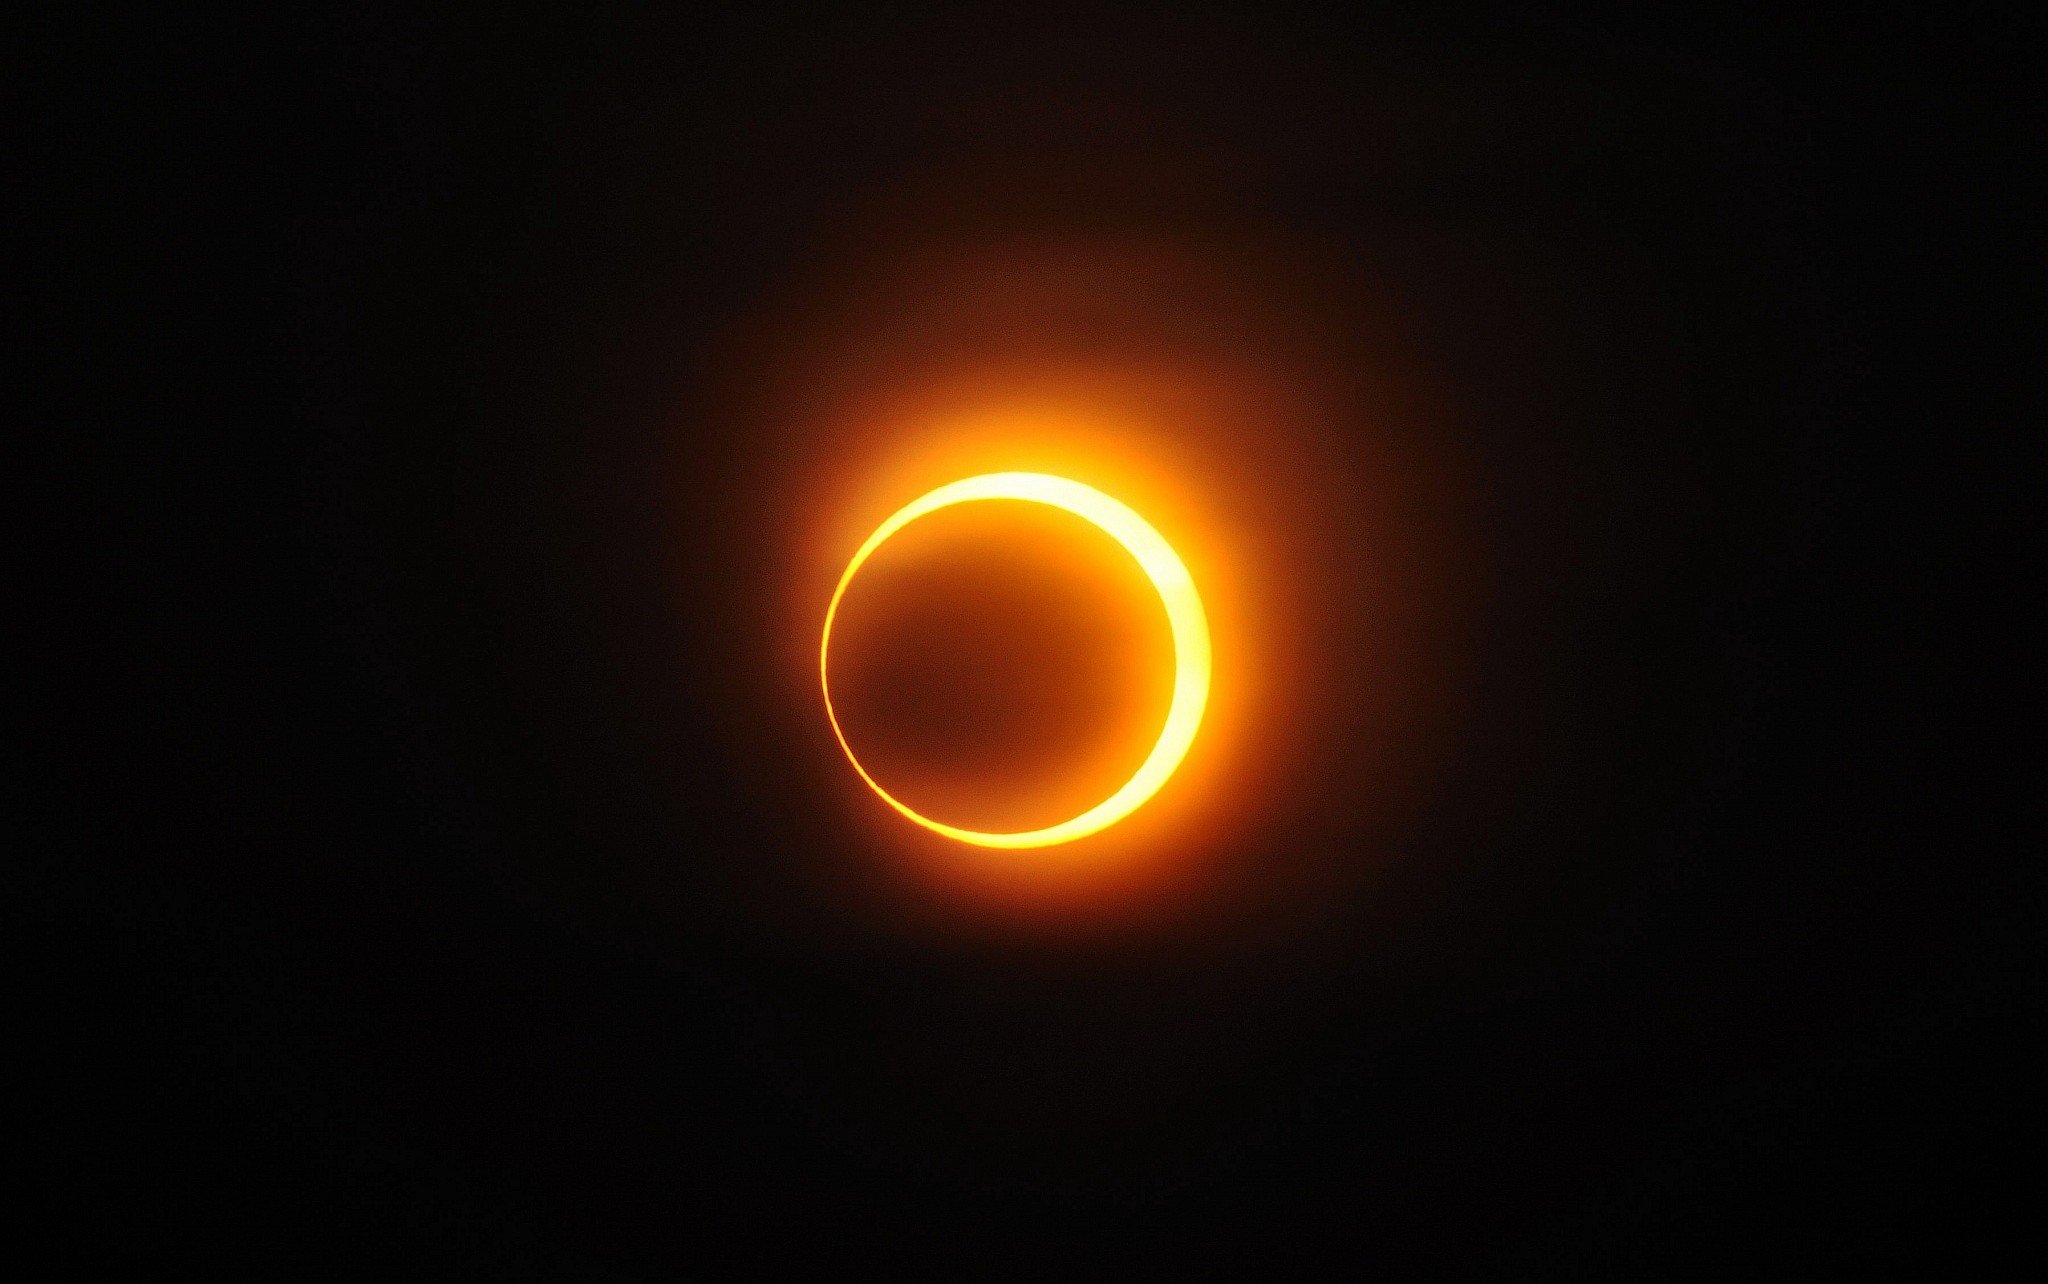 Solar annular eclipse of Janua